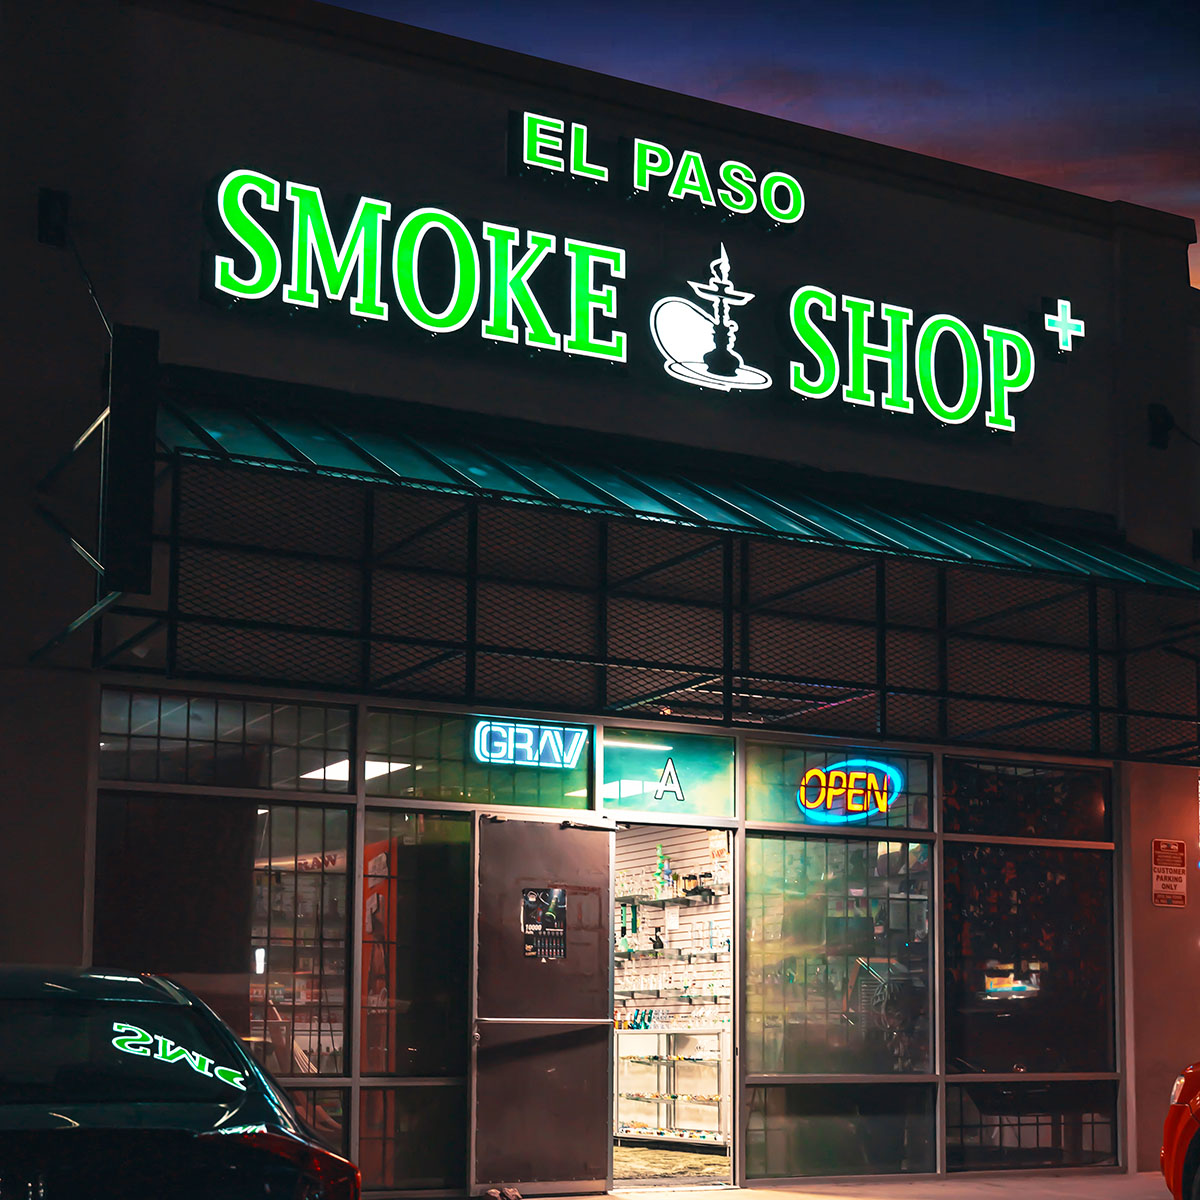 El Paso Smoke Shop - 5004 Desert Blvd N A, El Paso, TX 79912 near me